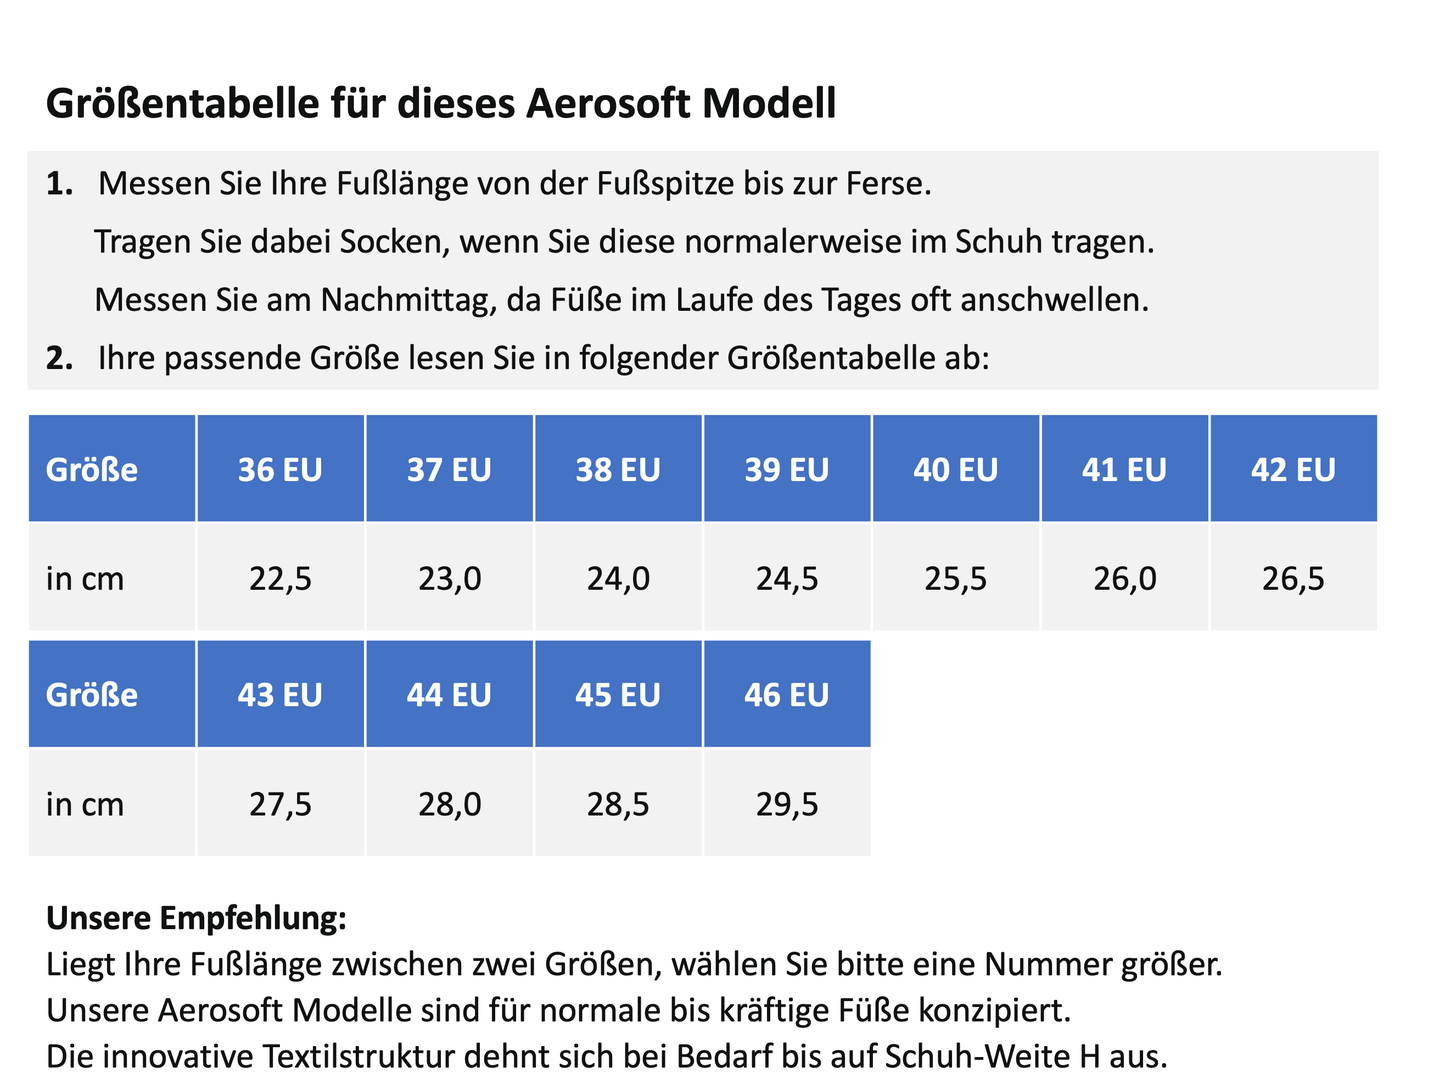 Aerosoft Klett-Pantolette Stretch 11, für Damen und Herren